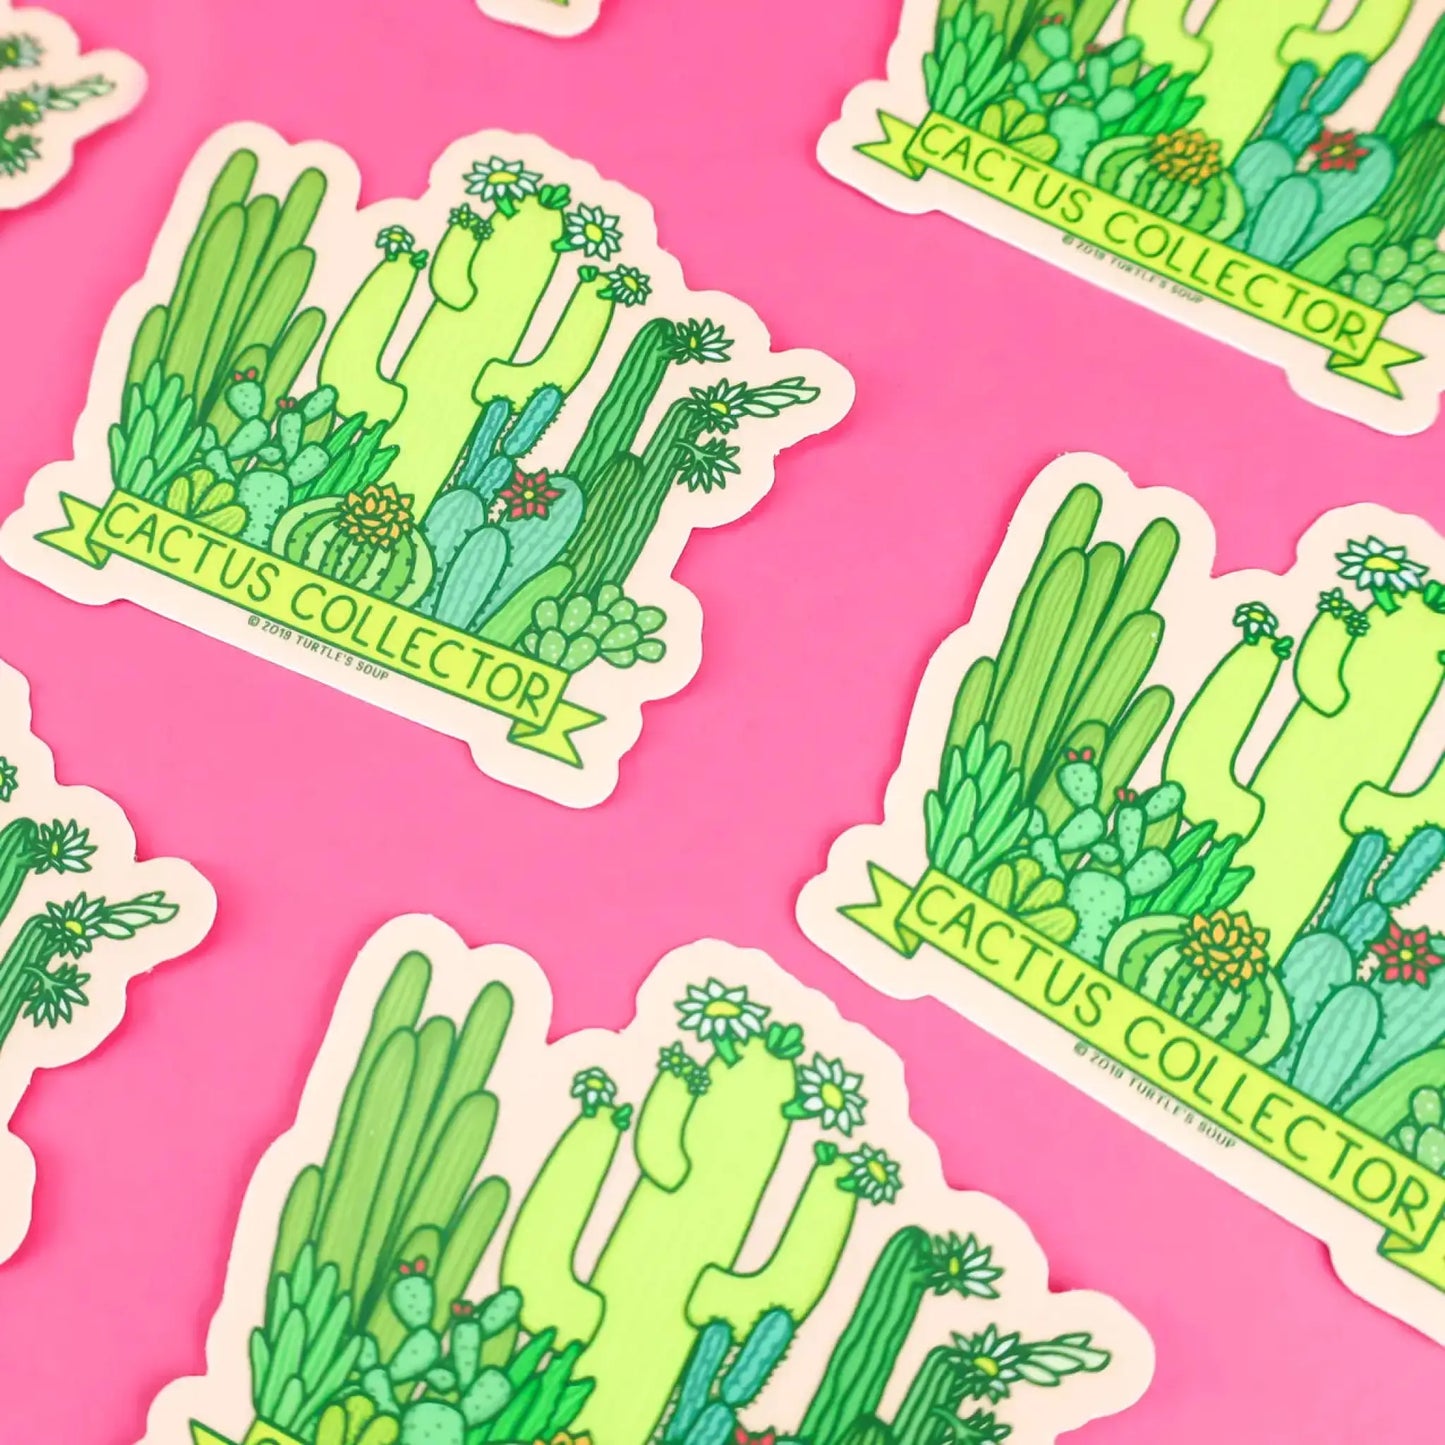 Cactus Collector vinyl sticker - Sticker